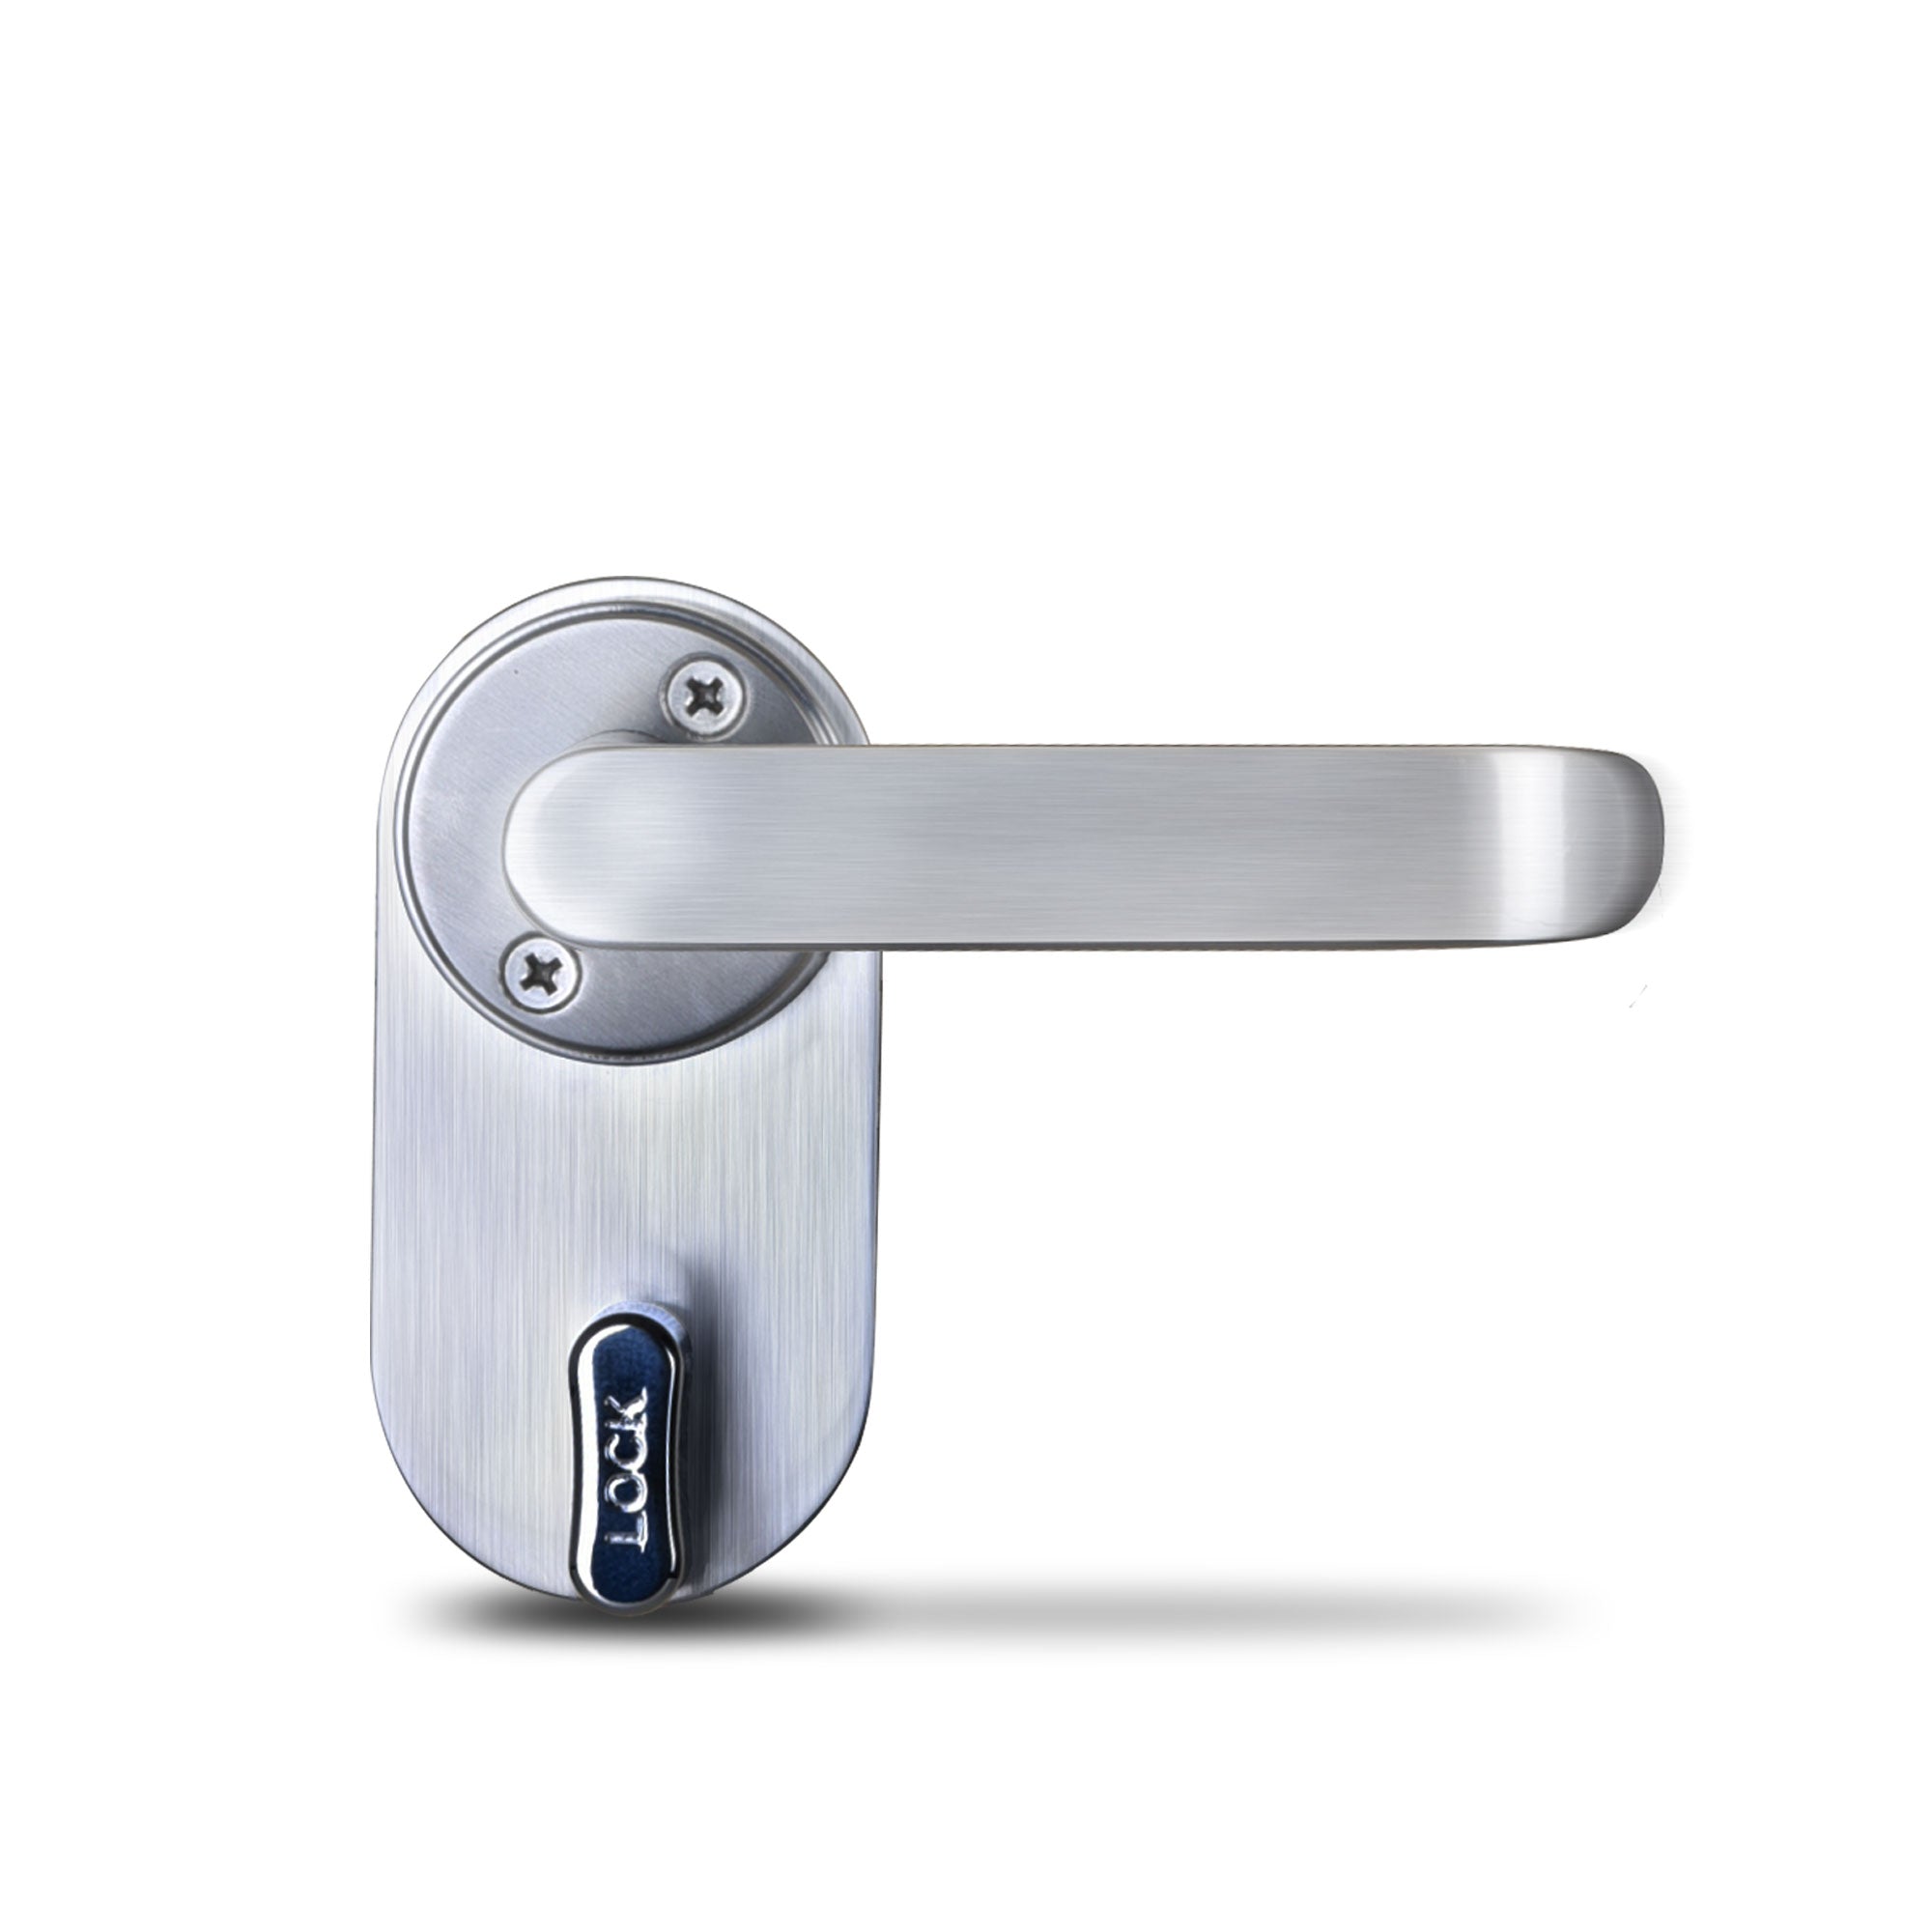 Cerradura para hoteles Excel Digital Doorlock modelo Excel 6200 con manija, módulo interior